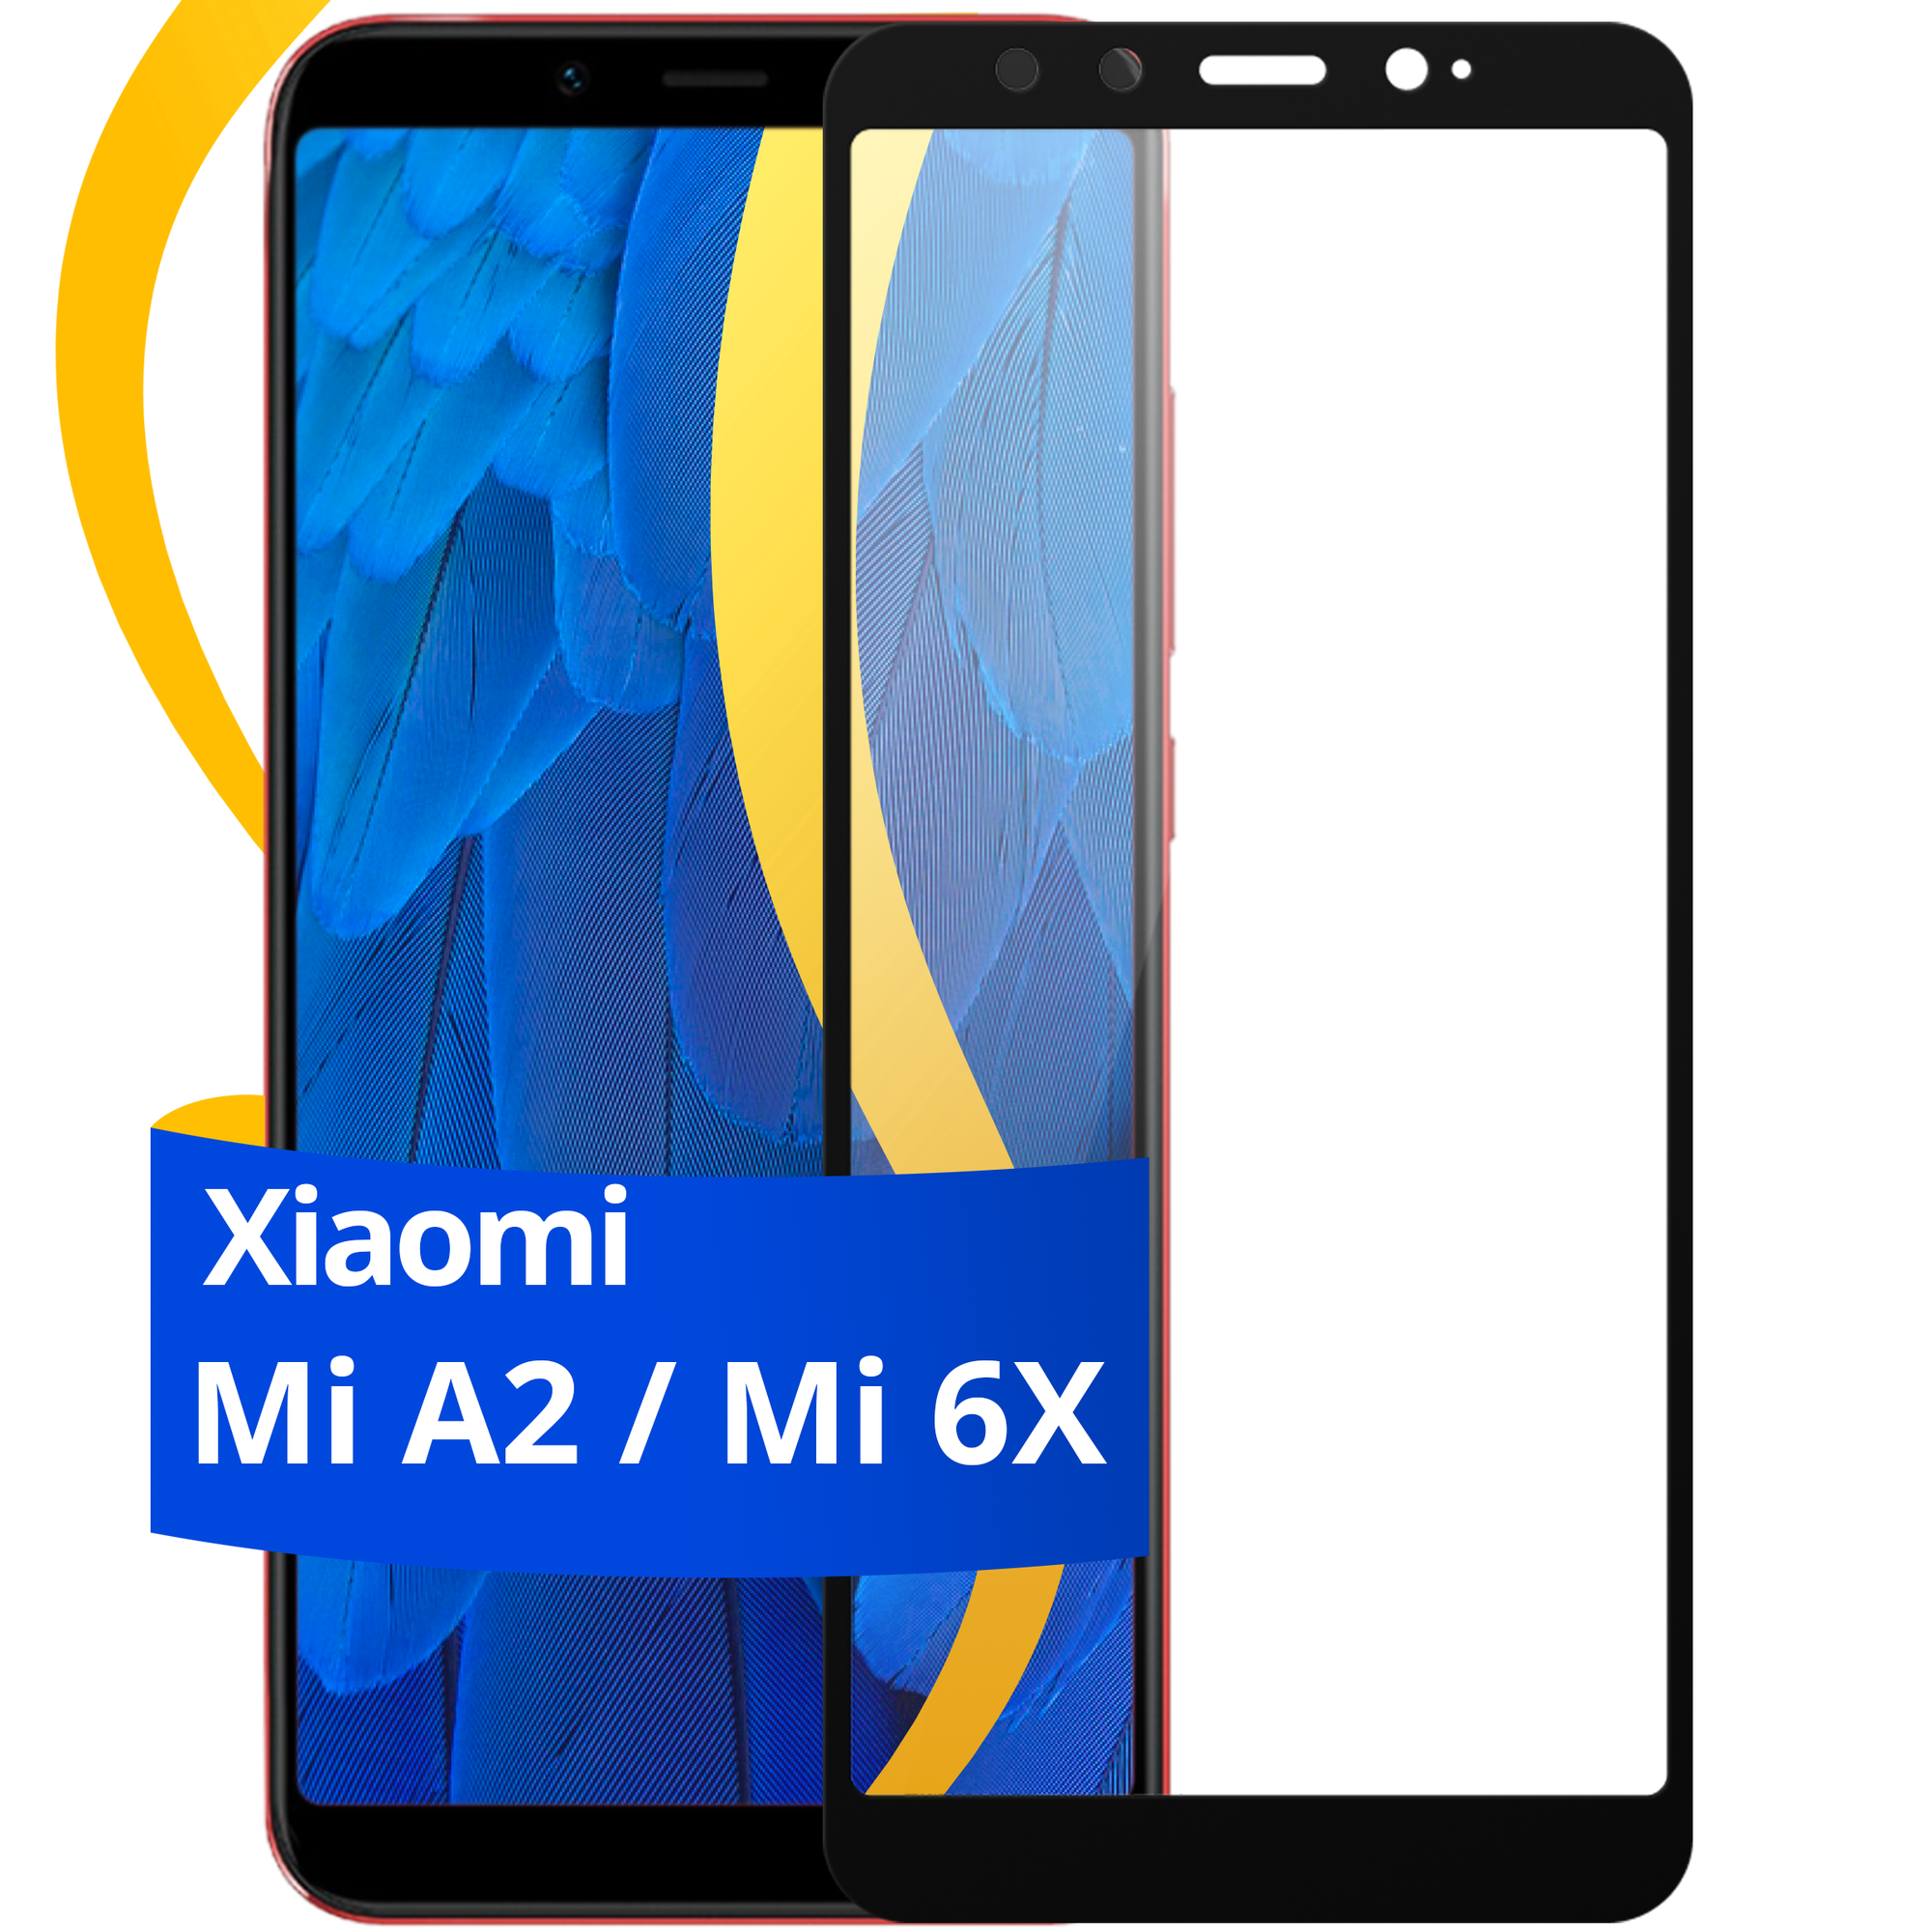 Глянцевое защитное стекло для телефона Xiaomi Mi A2 и Mi 6X / Противоударное стекло с олеофобным покрытием на смартфон Сяоми Ми А2 и Ми 6Х